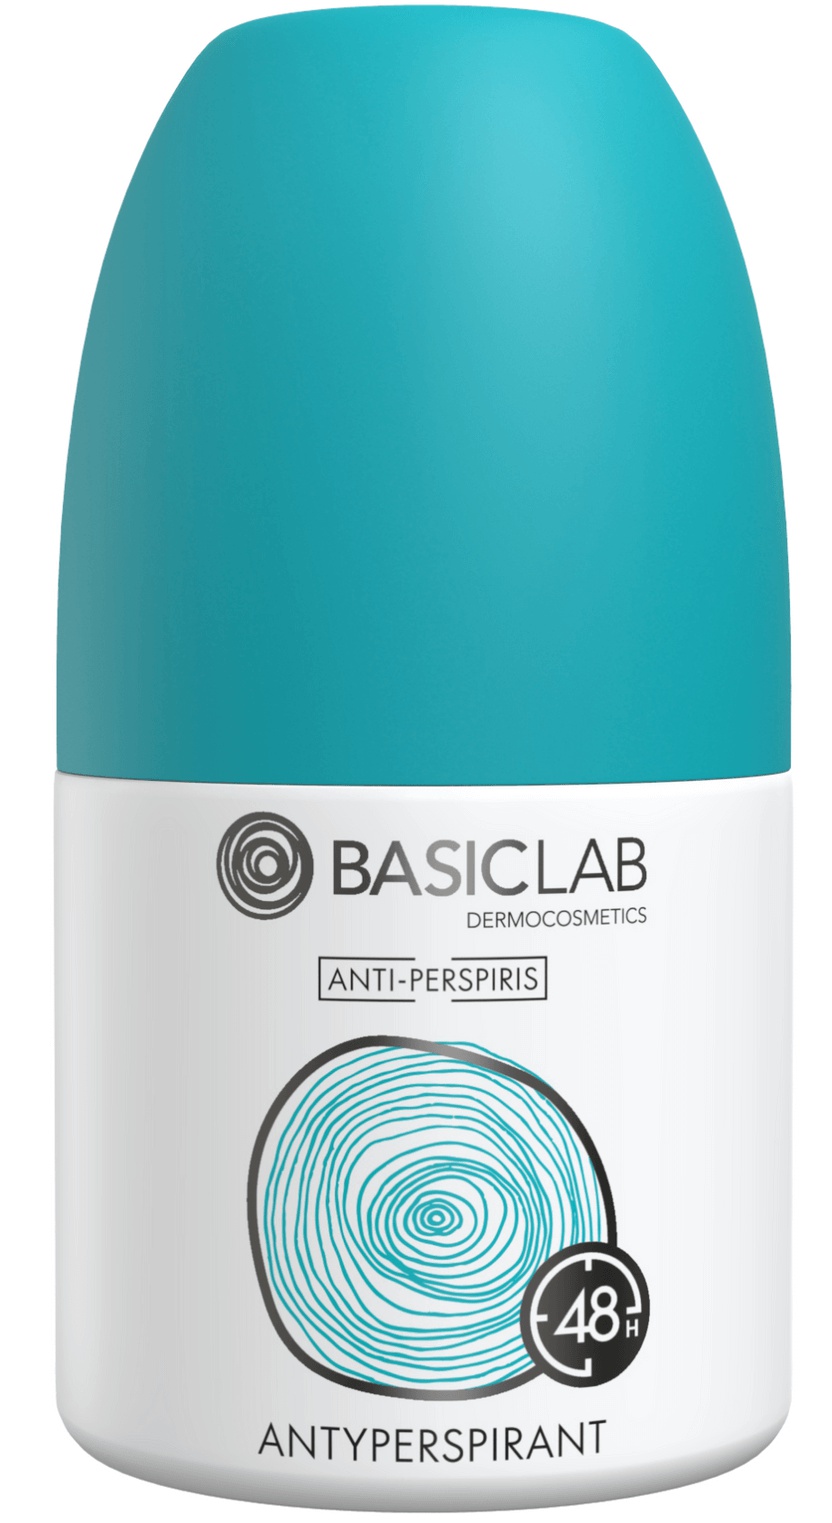 Basiclab Anti-Perspiris Antiperspirant 48h